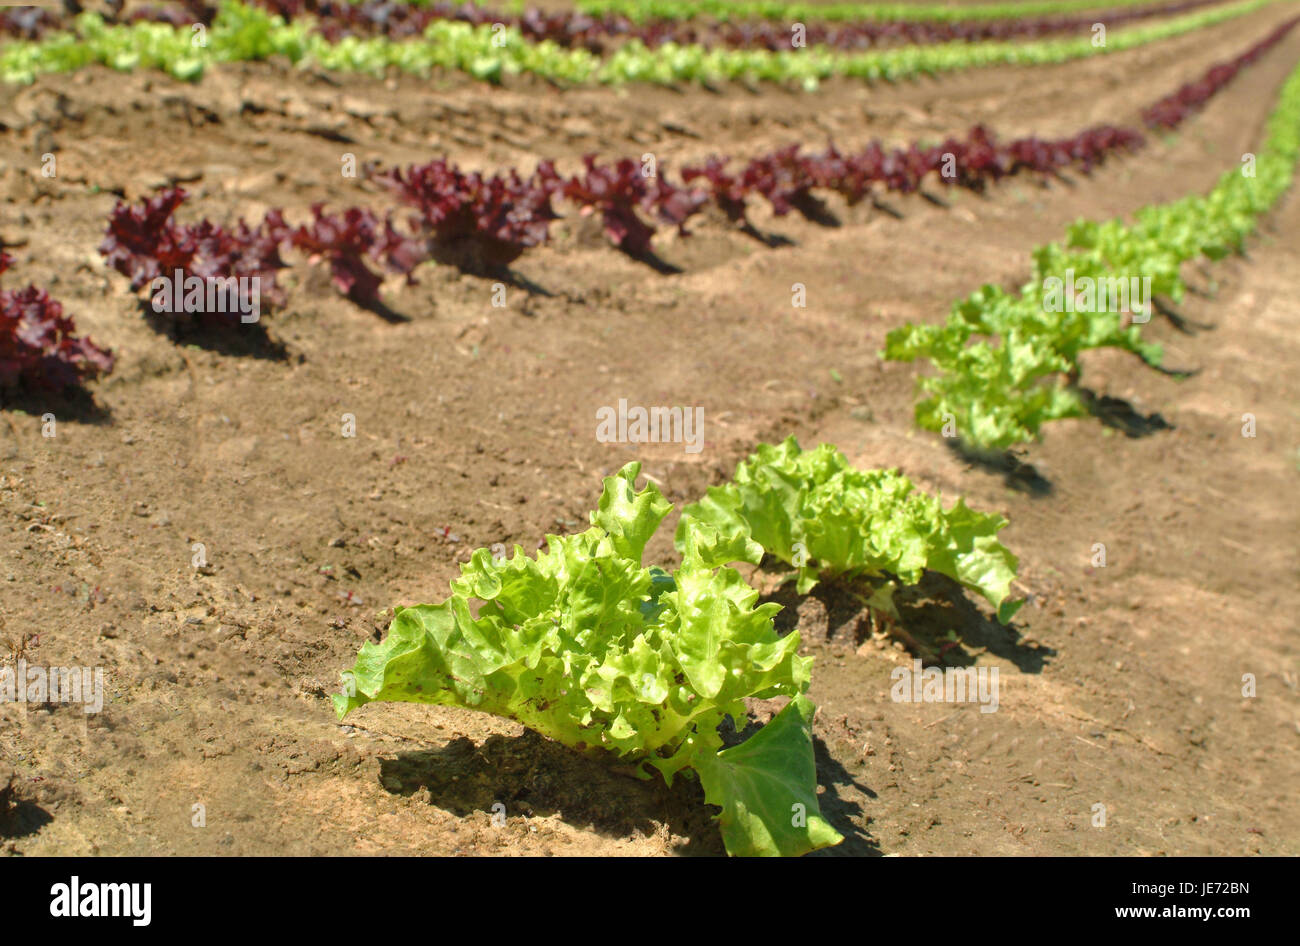 Field, salad annex, standard green salad, Stock Photo